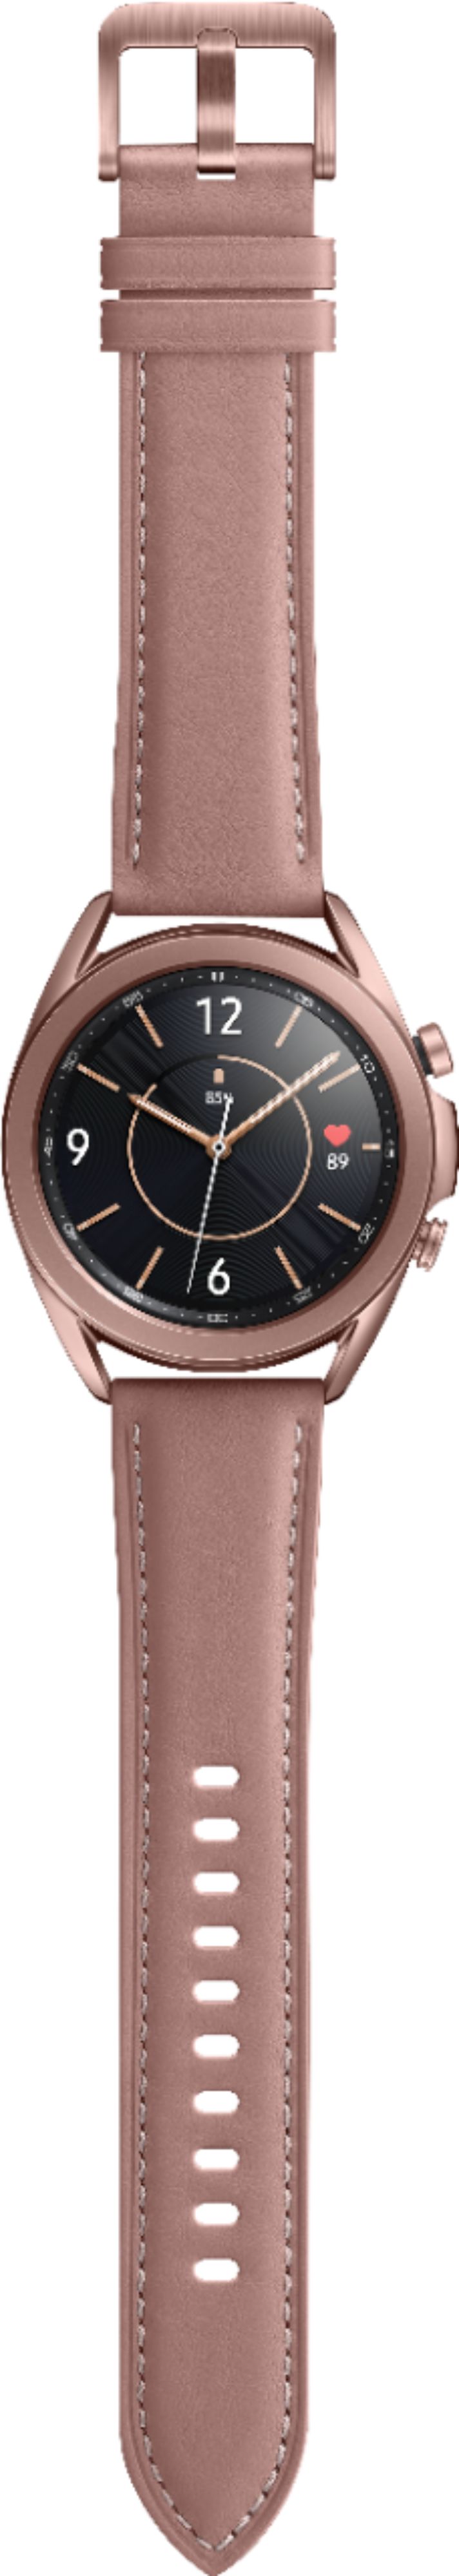 Samsung Geek Squad Certified Refurbished Galaxy Watch3 Smartwatch 41mm Stainless Mystic Bronze Gsrf Sm R850nzdaxar Best Buy